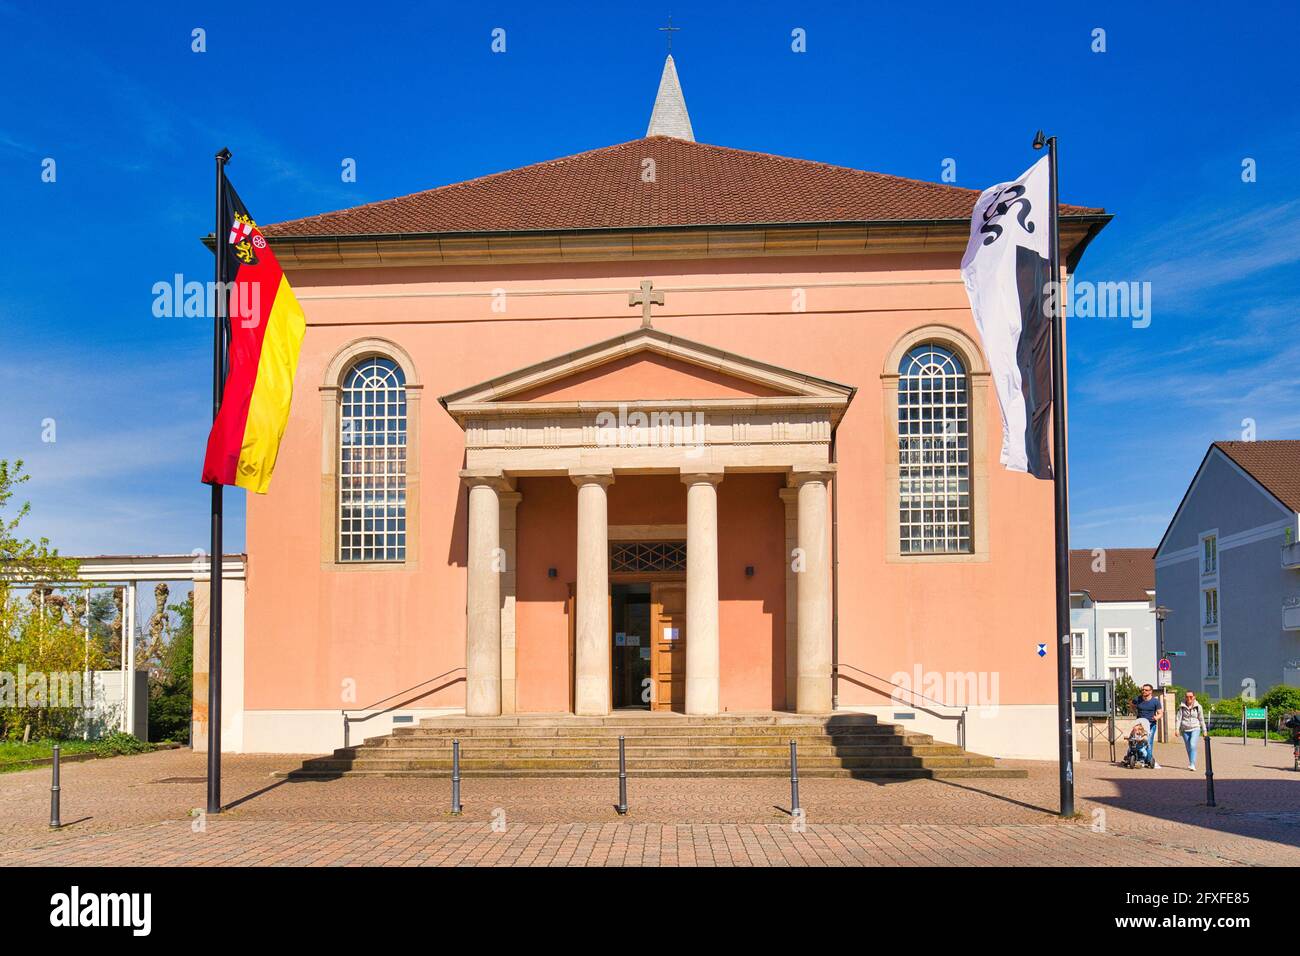 Bad Dürkheim, Alemania - Abril 2021: Iglesia parroquial de la ciudad de Neoclasicismo San Luis Foto de stock